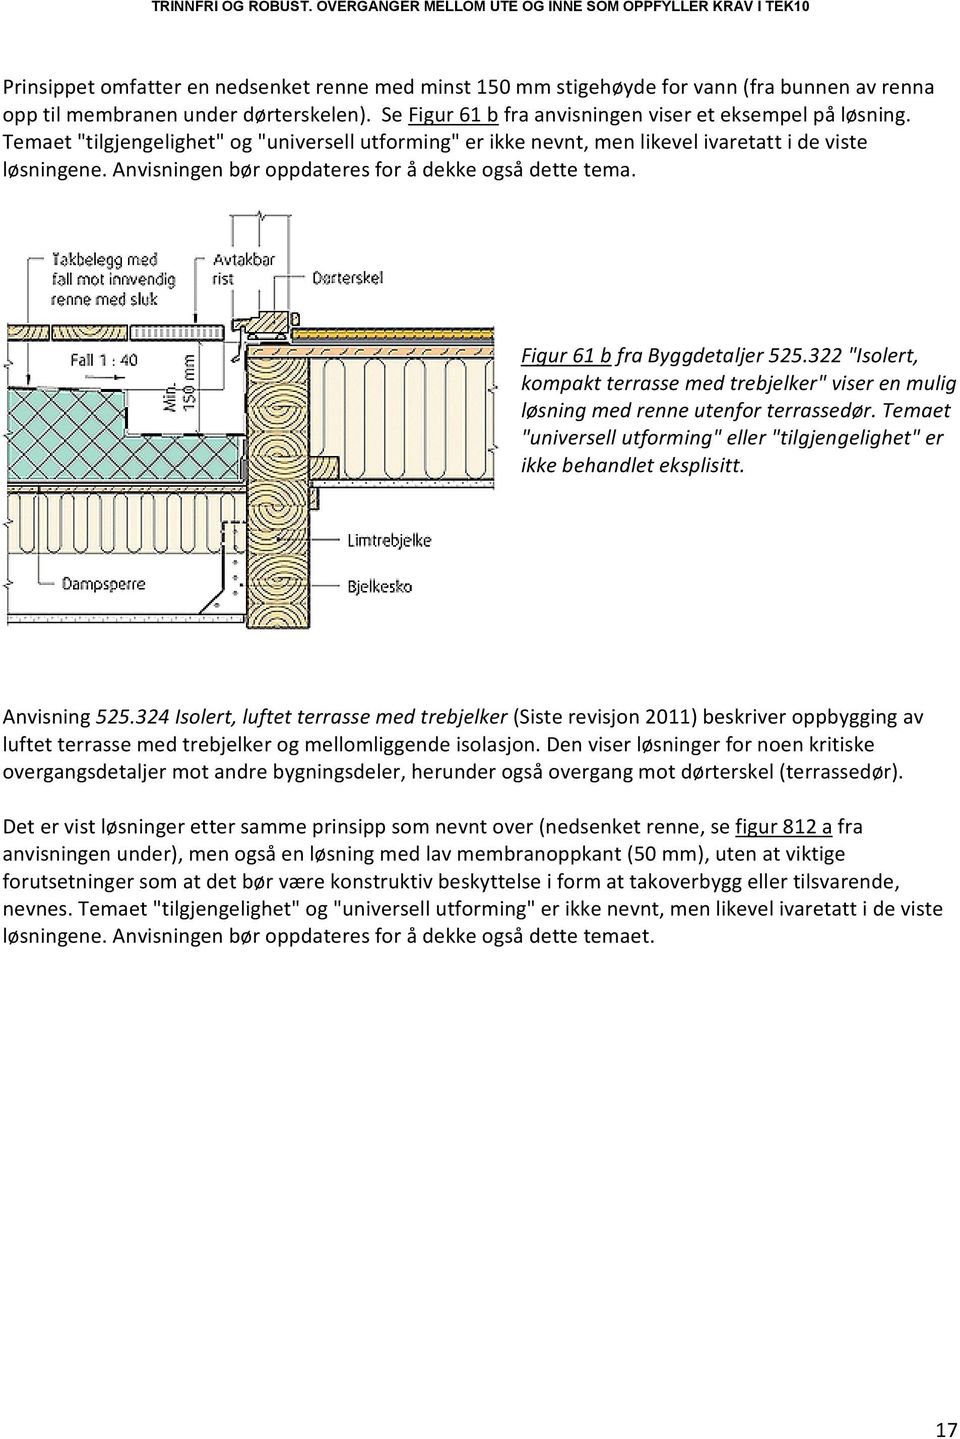 322 "Isolert, kompakt terrasse med trebjelker" viser en mulig løsning med renne utenfor terrassedør. Temaet "universell utforming" eller "tilgjengelighet" er ikke behandlet eksplisitt. Anvisning 525.